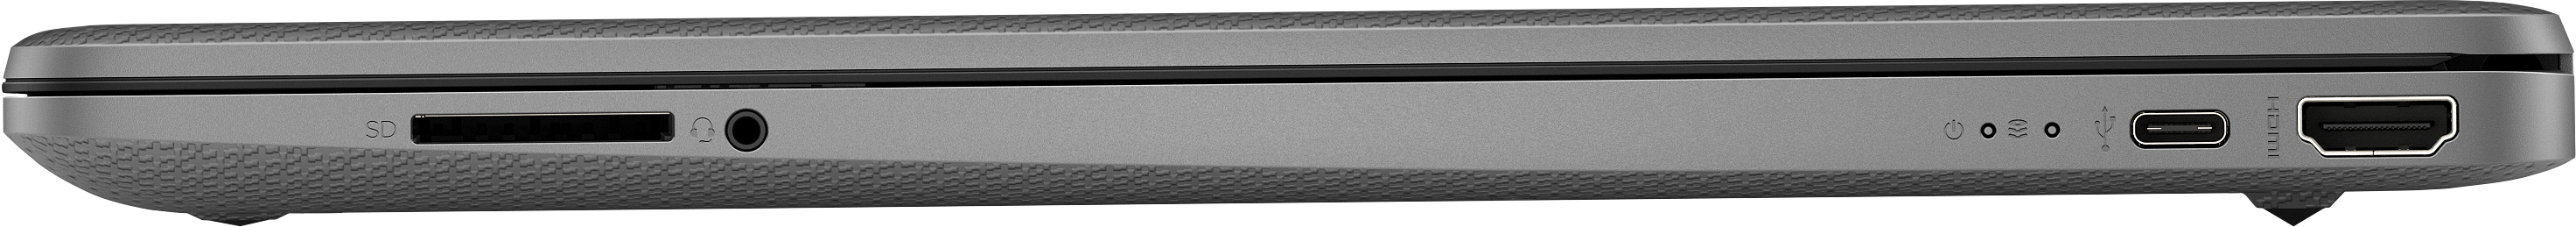 Notebook HP 15s-eq2060nl 5500U Computer portatile 39,6 cm (15.6